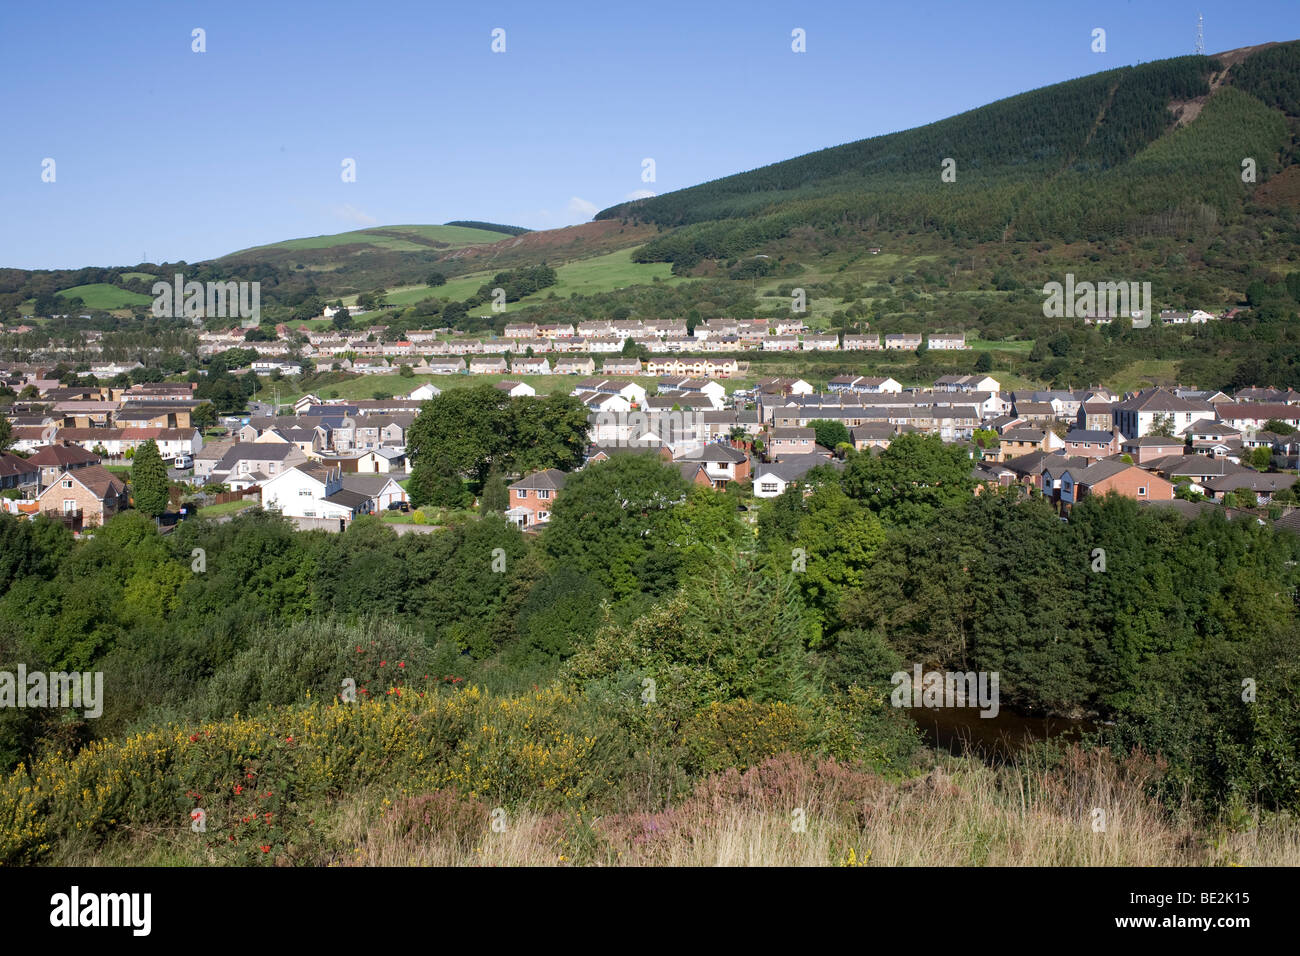 Cwmafan, Neath Port Talbot borough, con afan valley a finales del verano Foto de stock